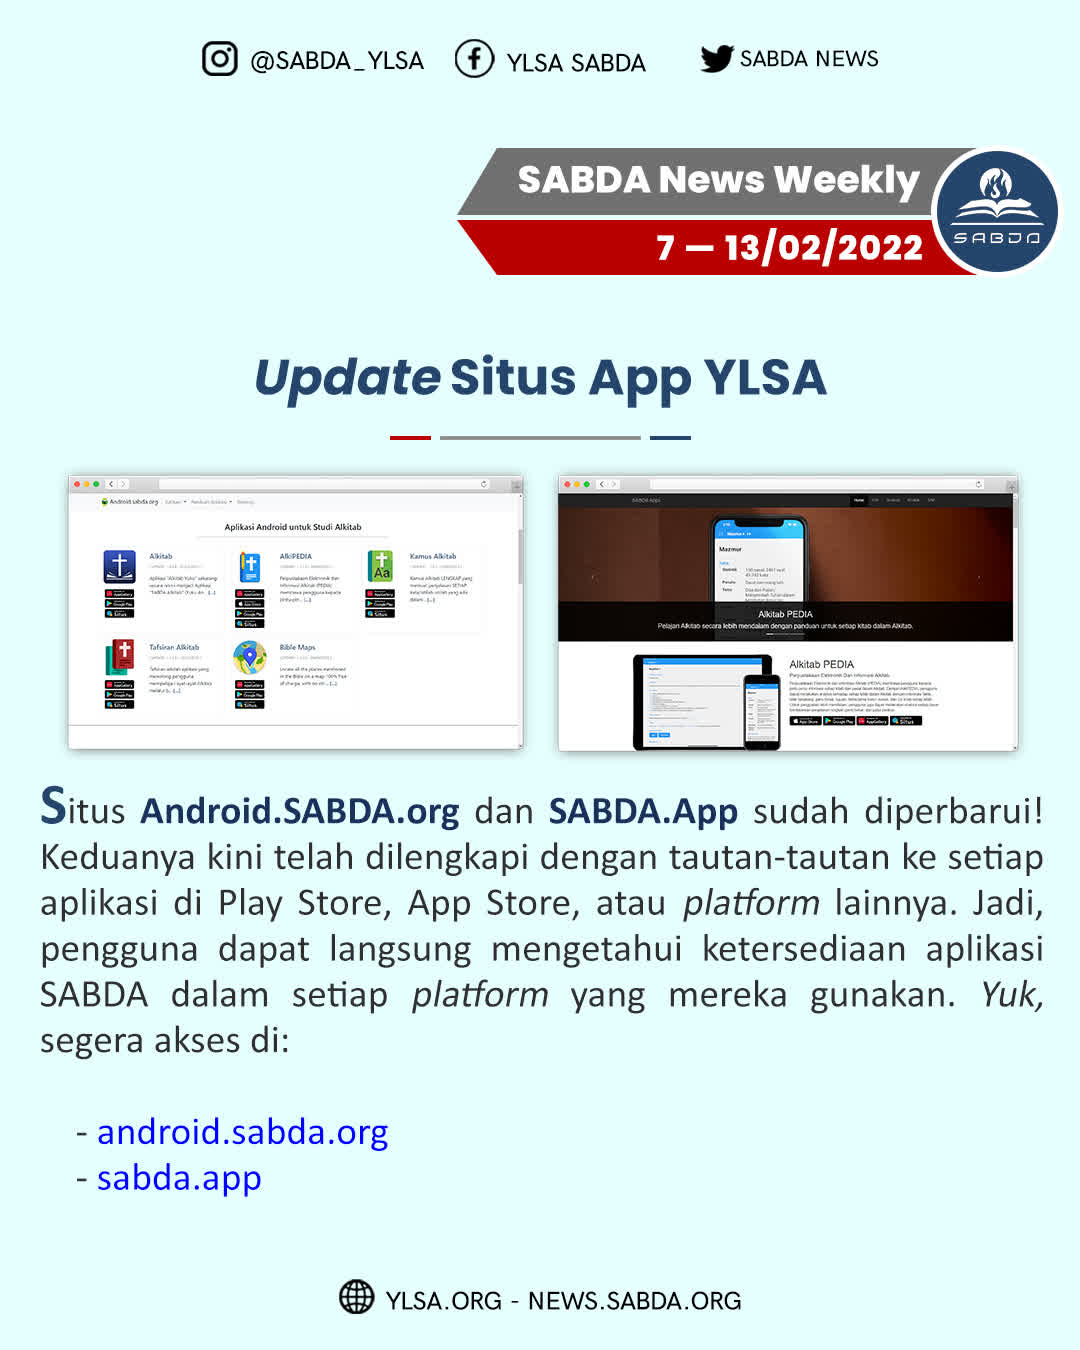 Update Situs App YLSA